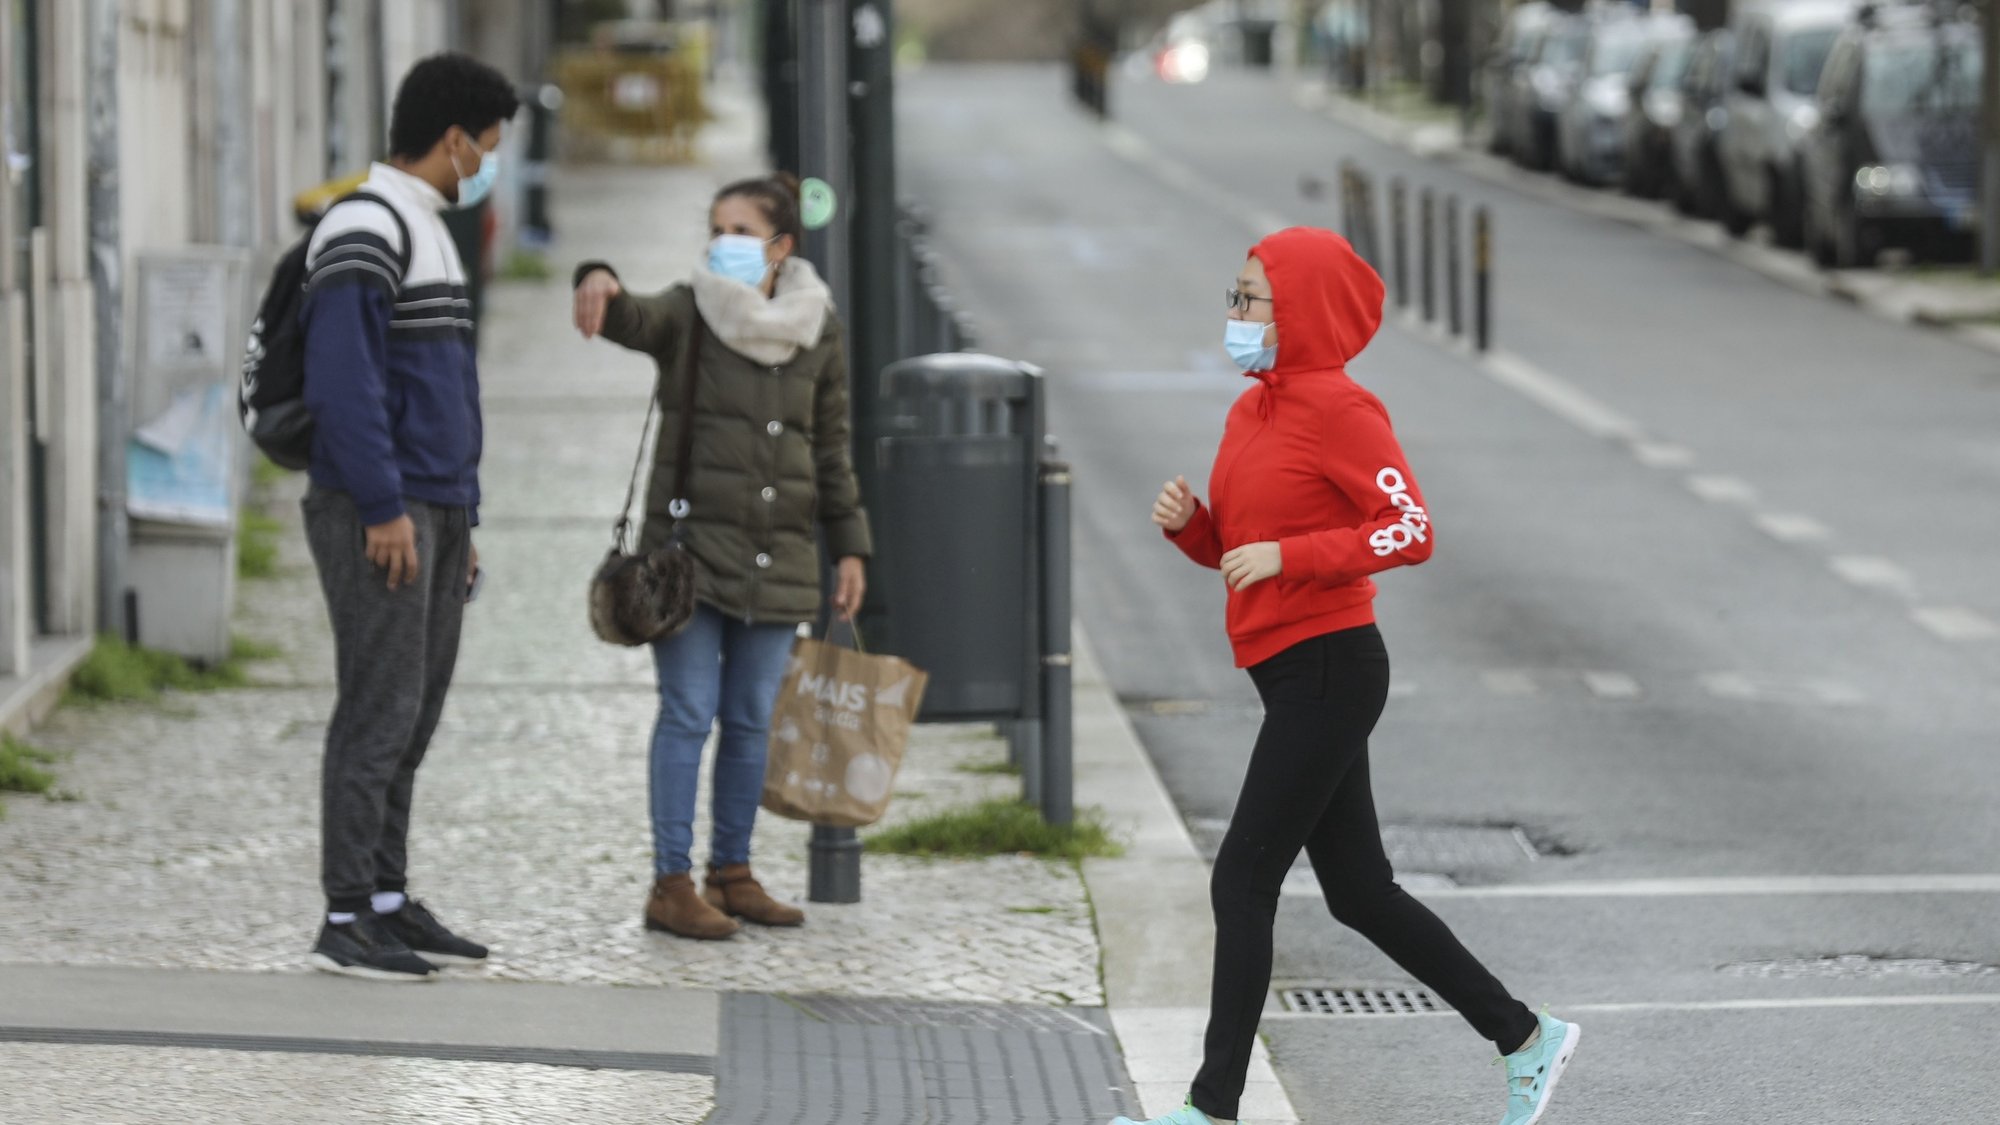 Uma mulher corre junto ao Saldanha em Lisboa, durante período com medidas de restrição impostas pelo novo confinamento, na sequência da pandemia de Covid-19, 30 de janeiro de 2021. MIGUEL A. LOPES/LUSA